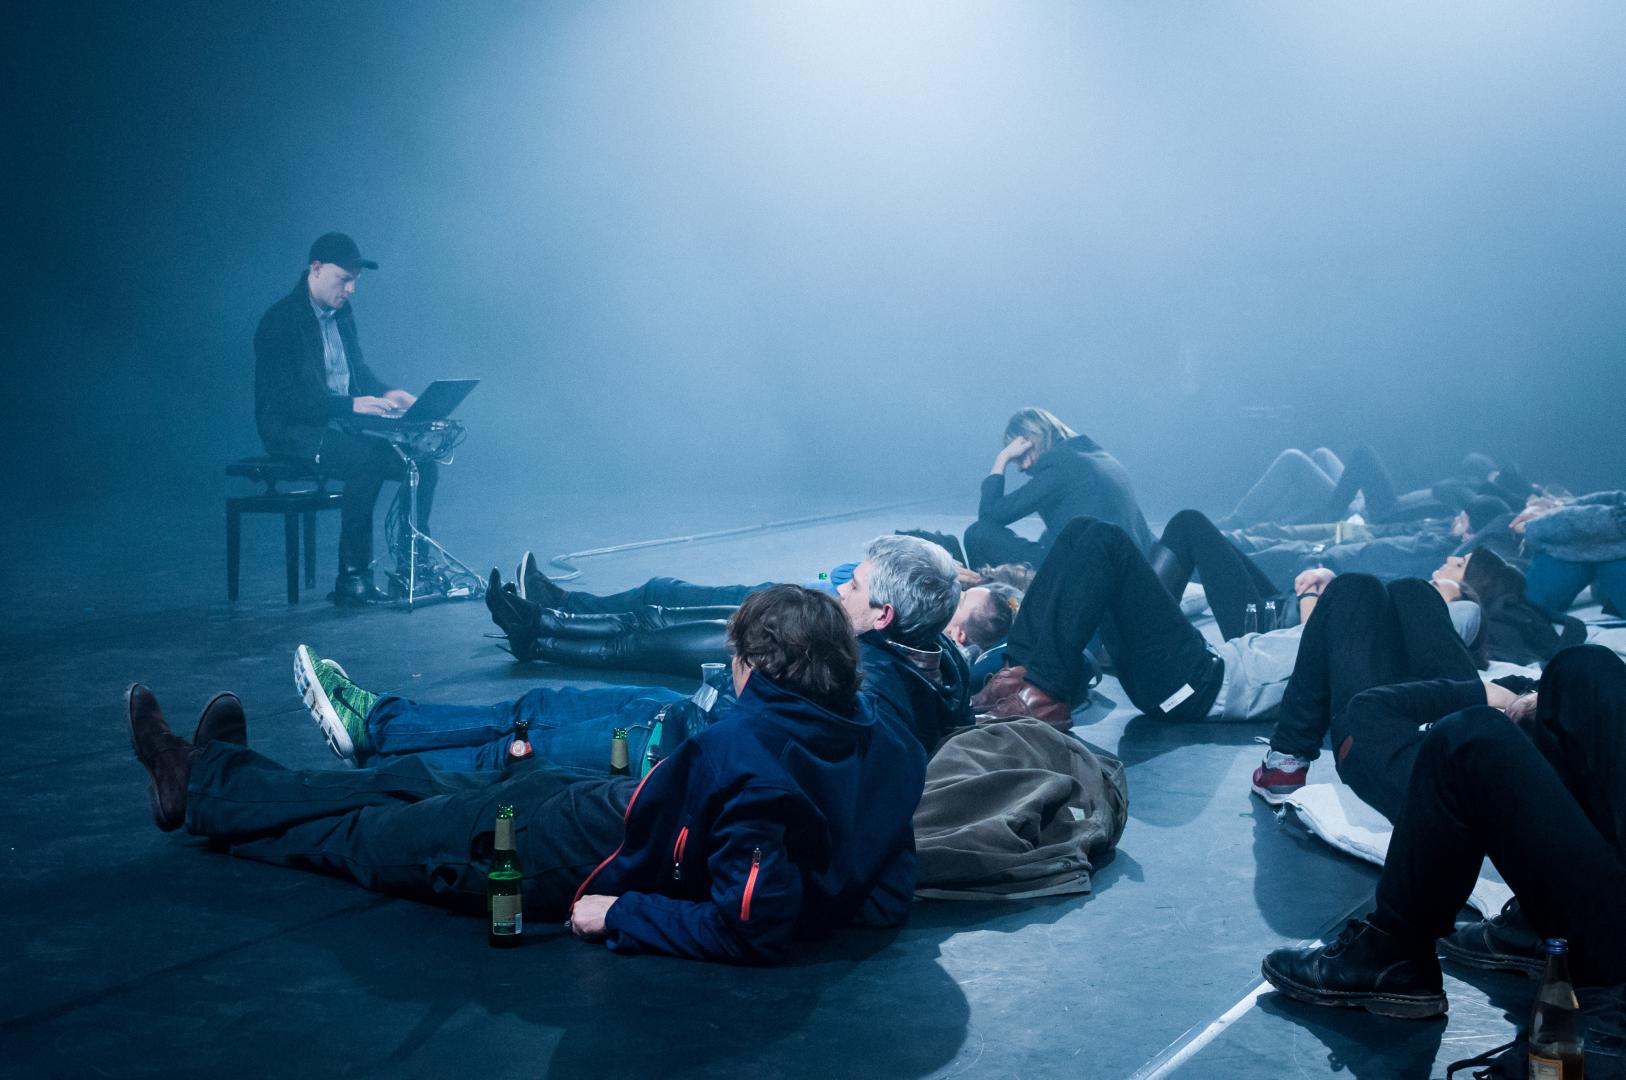 Links der Performer auf einem Stuhl, rechts von ihm auf dem Boden liegende Besucher:innen